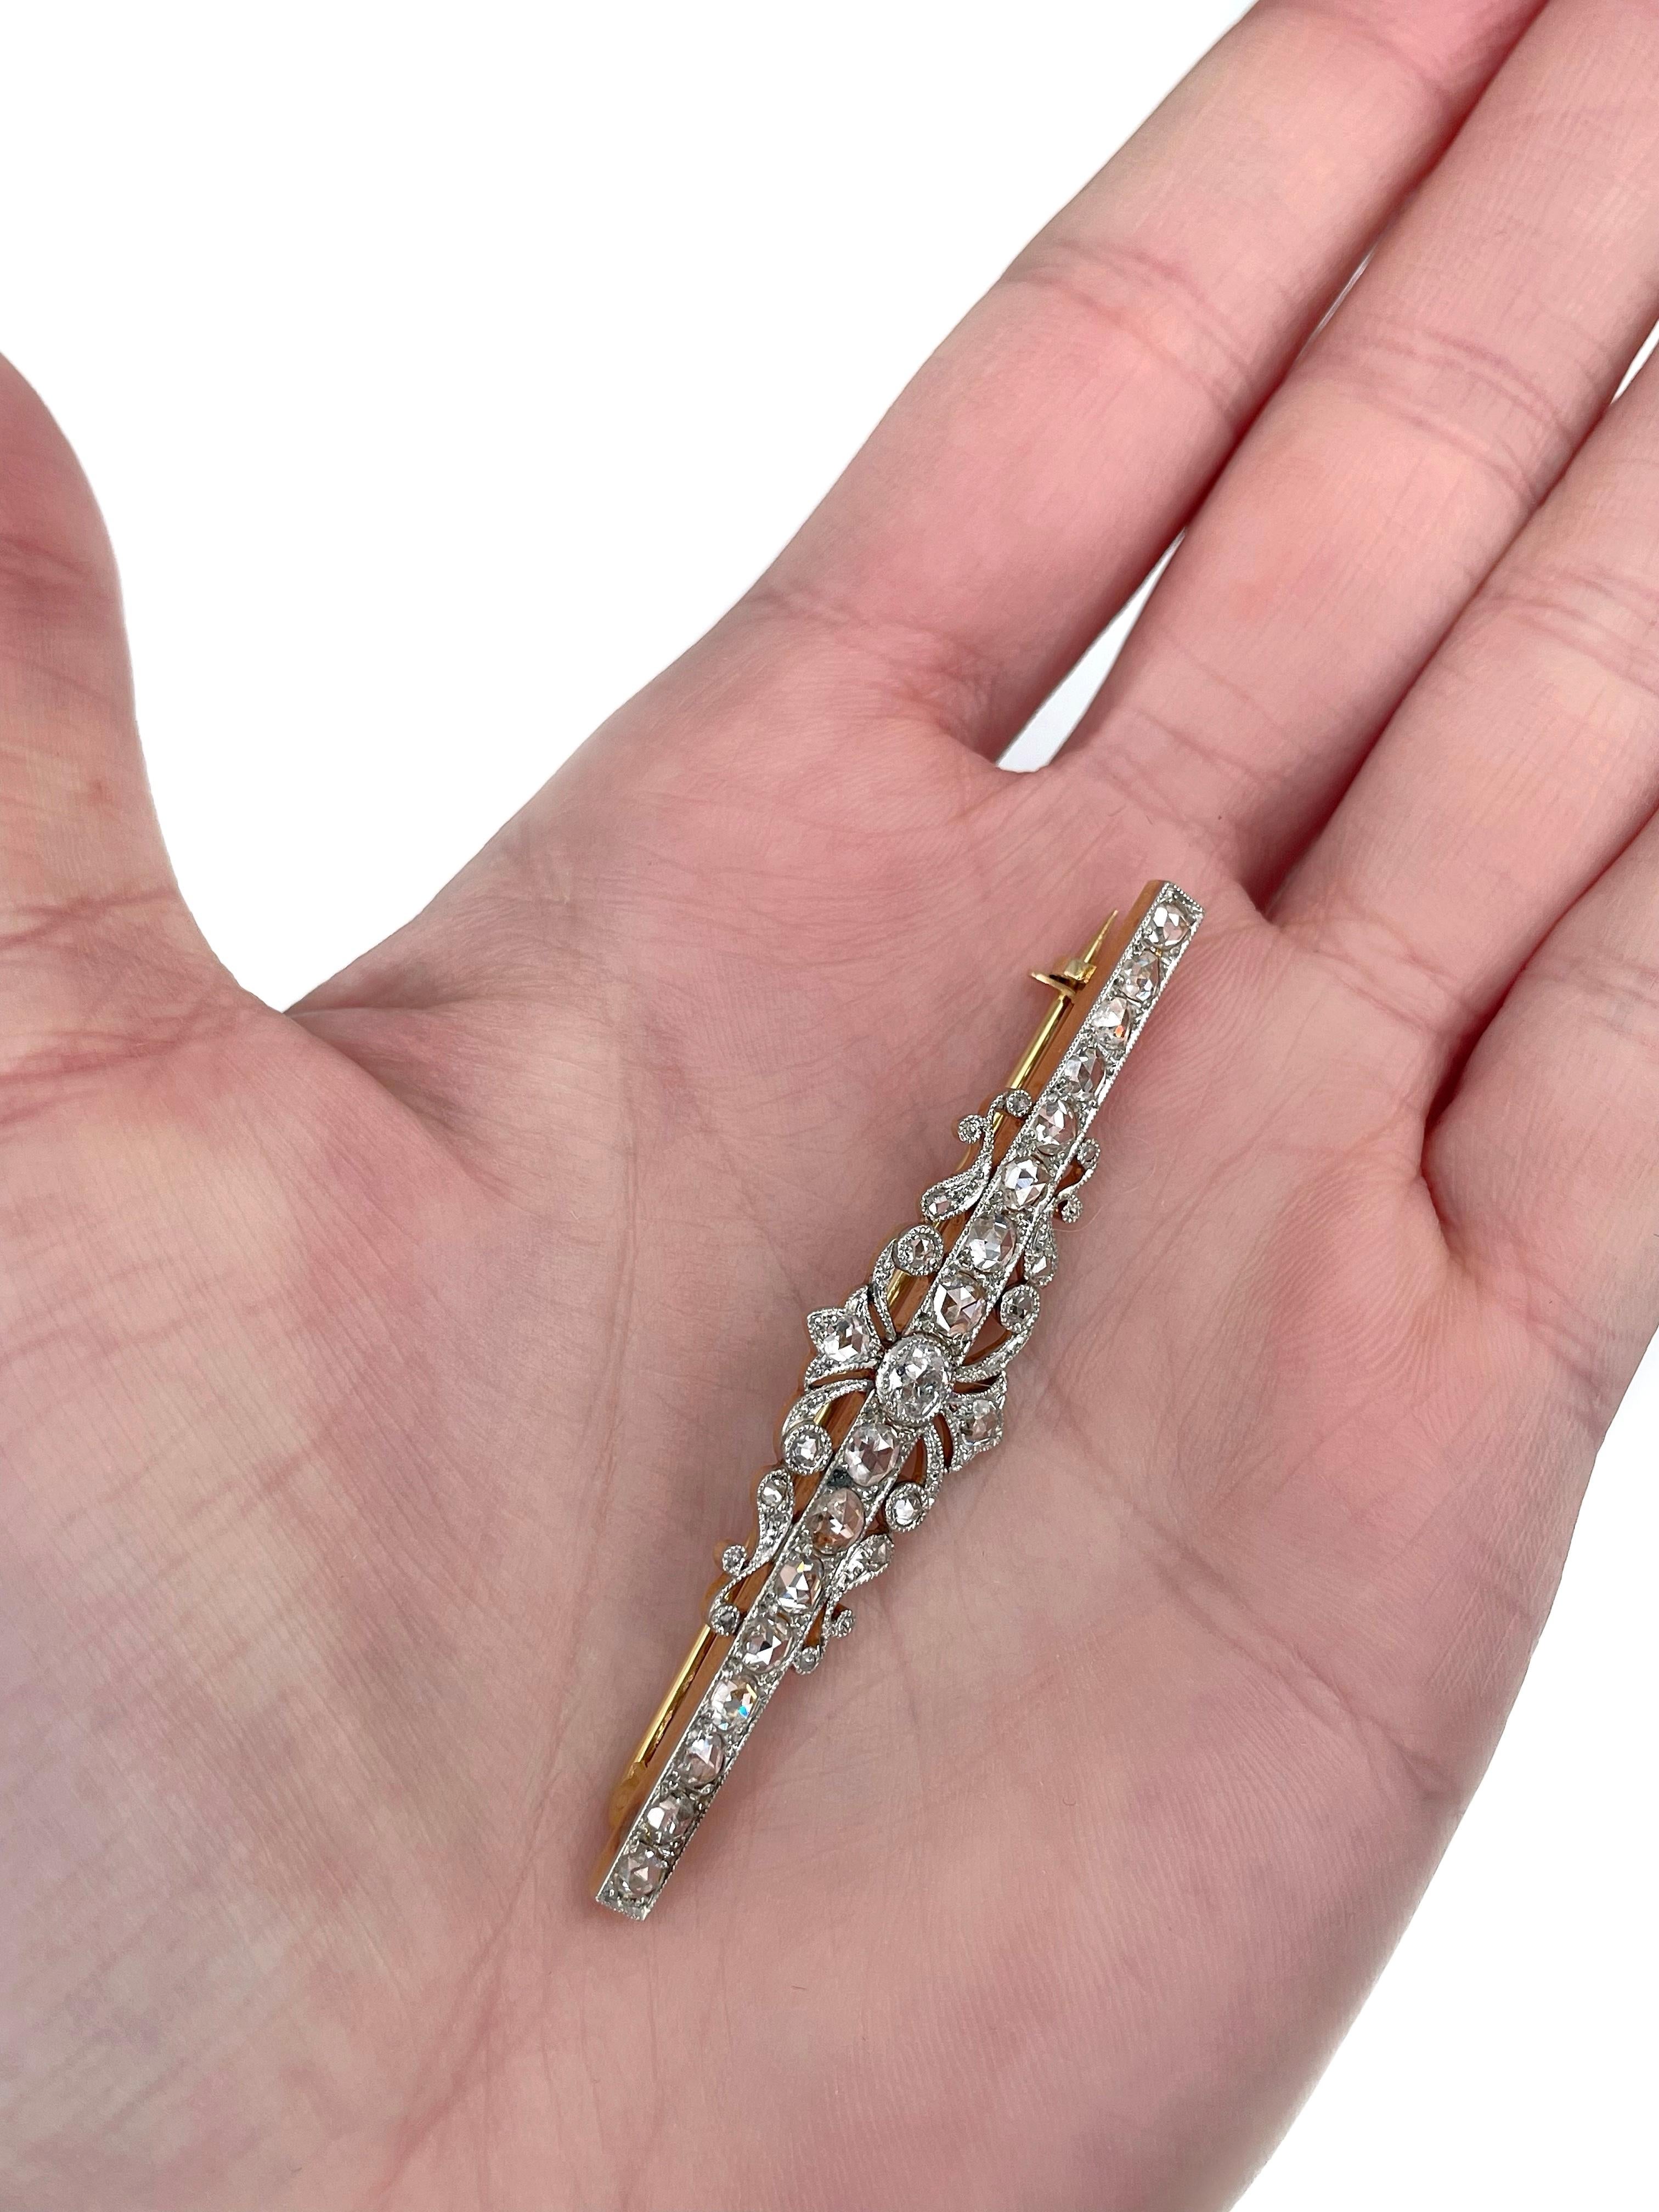 Il s'agit d'une broche édouardienne en or 14 carats, ornée de Pt900. Vers 1910.

La pièce comporte des diamants (TW 1.92ct) :
- 1 diamant (taille européenne ancienne, 0,22ct, RW-W, P2)
- 30 diamants (taille rose, TW 1,70ct, W-STW, VS-SI) 

Poids :